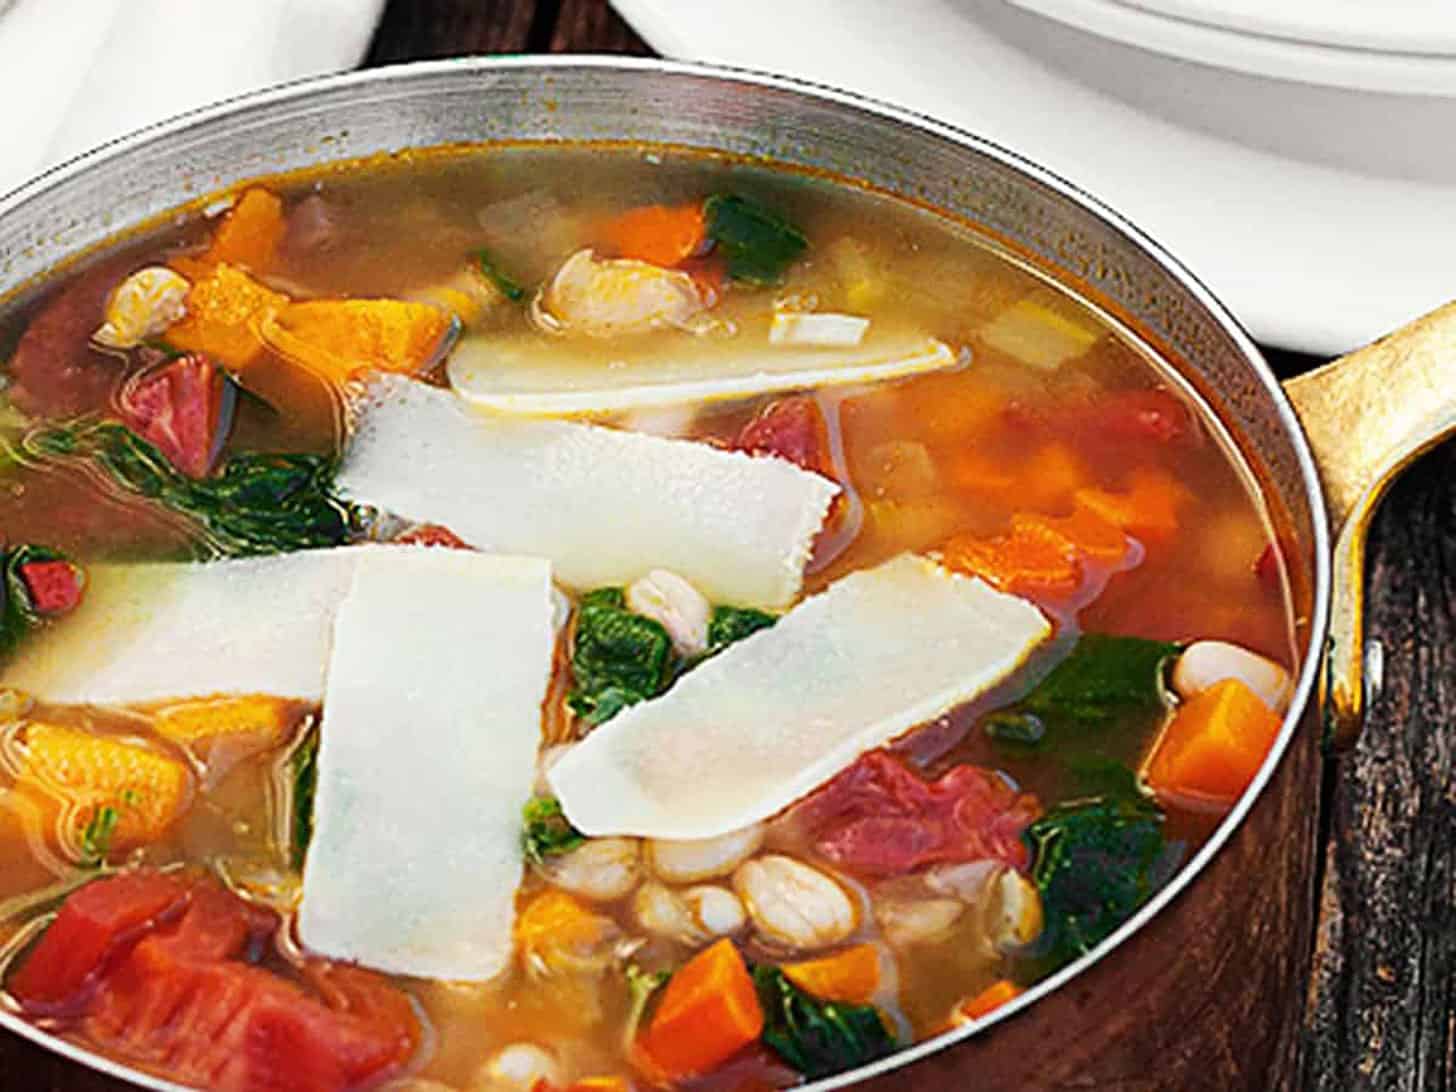 harvest vegetable soup in copper pot